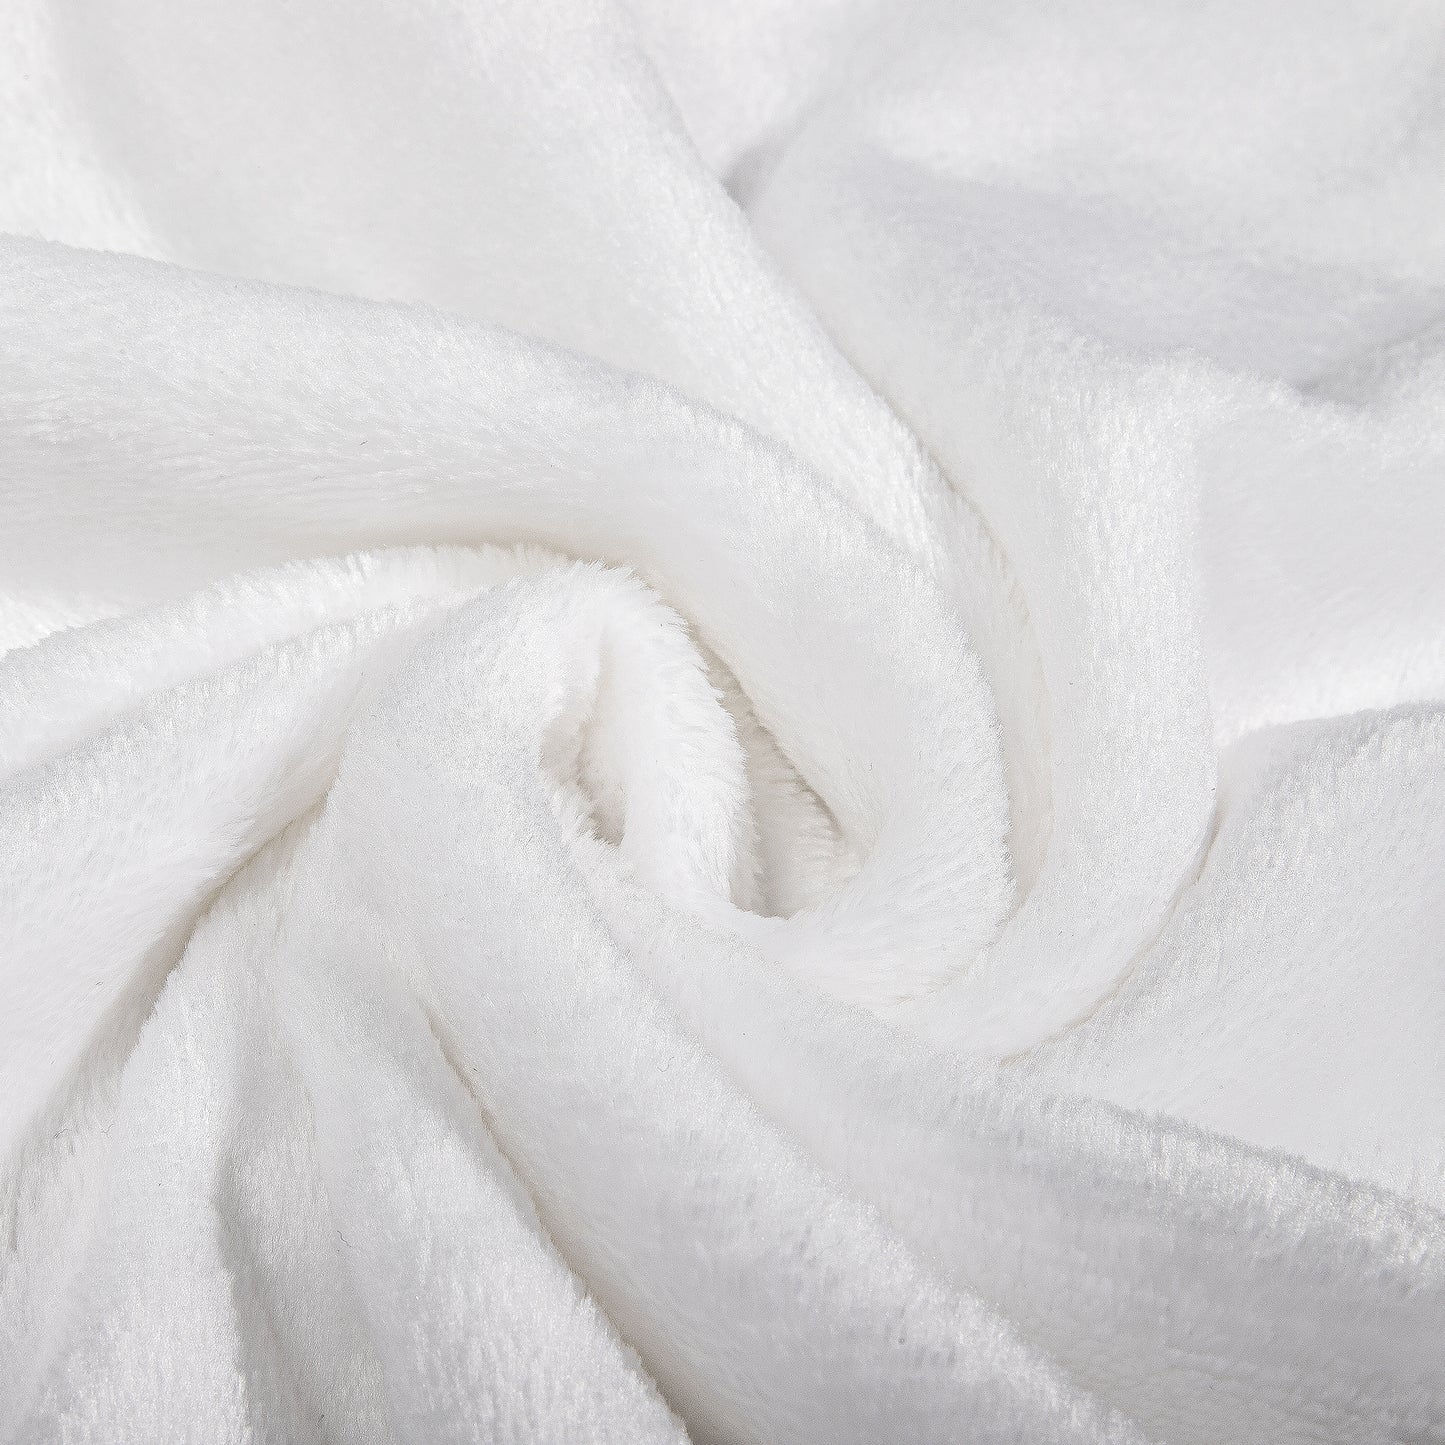 Akatsuki Premium Fleece Blanket